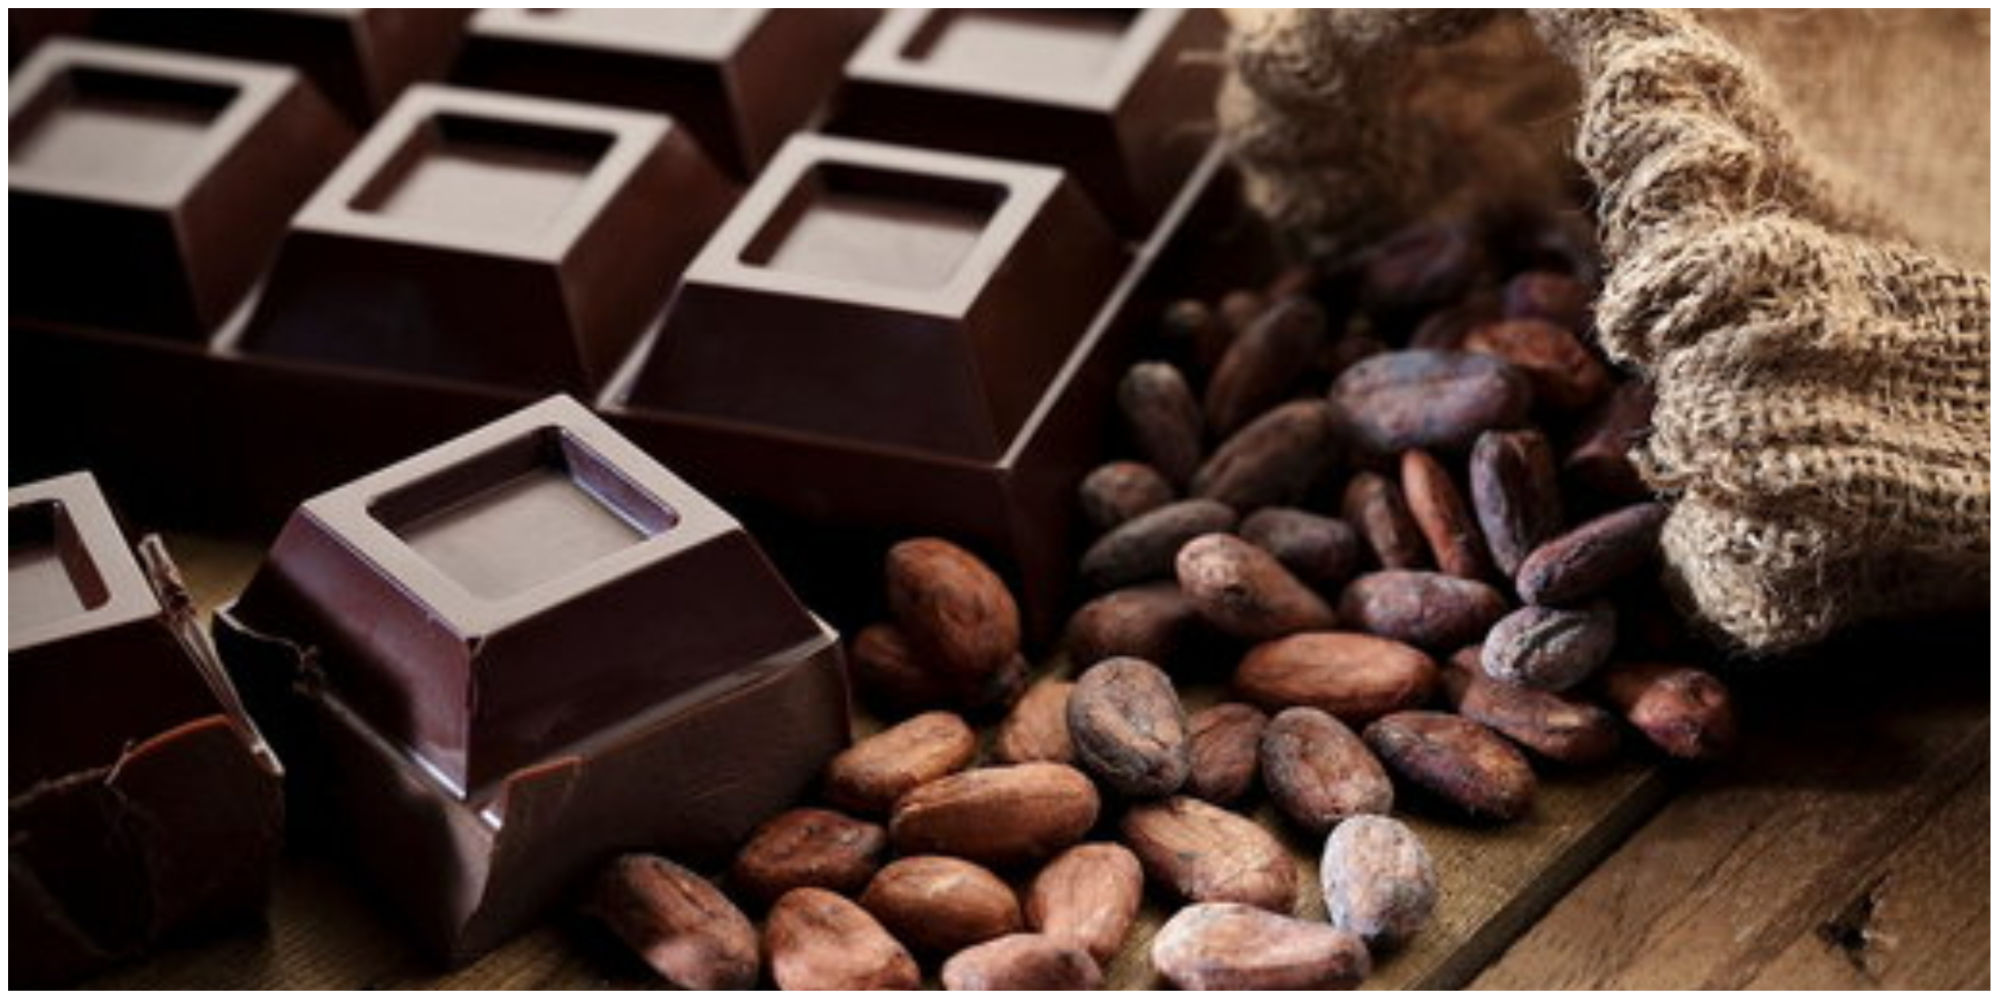 صعود عجیب و غریب قیمت کاکائو/شکلات ایرانی در طغیان قیمت ها دوام می آورد؟ 